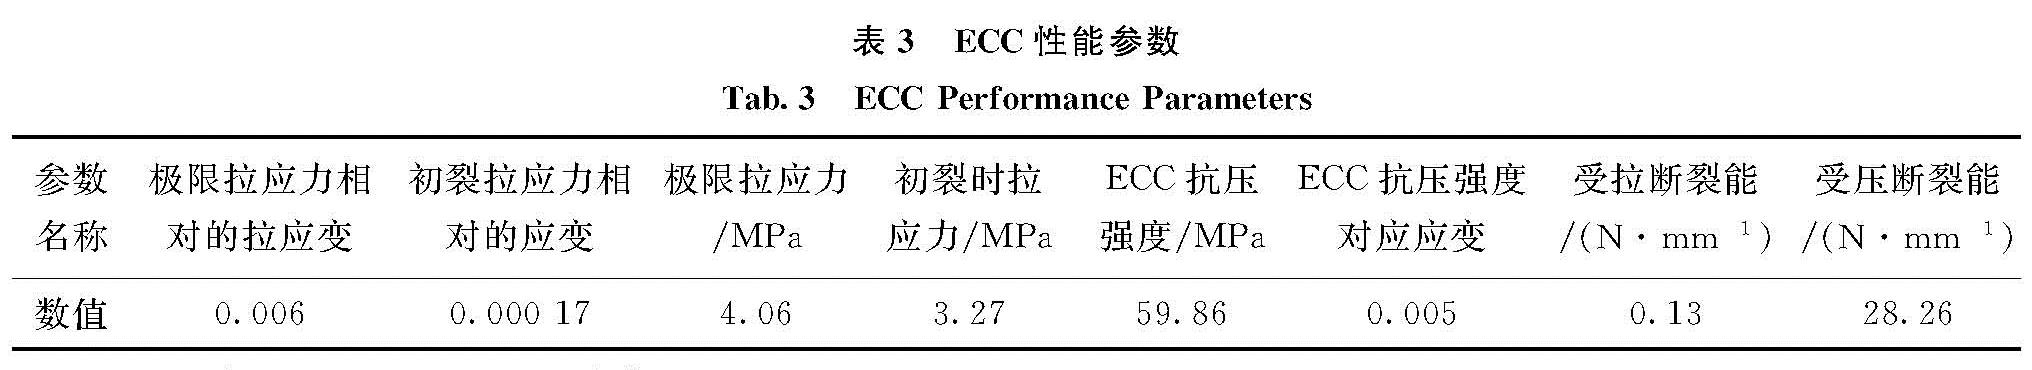 表3 ECC性能参数<br/>Tab.3 ECC Performance Parameters